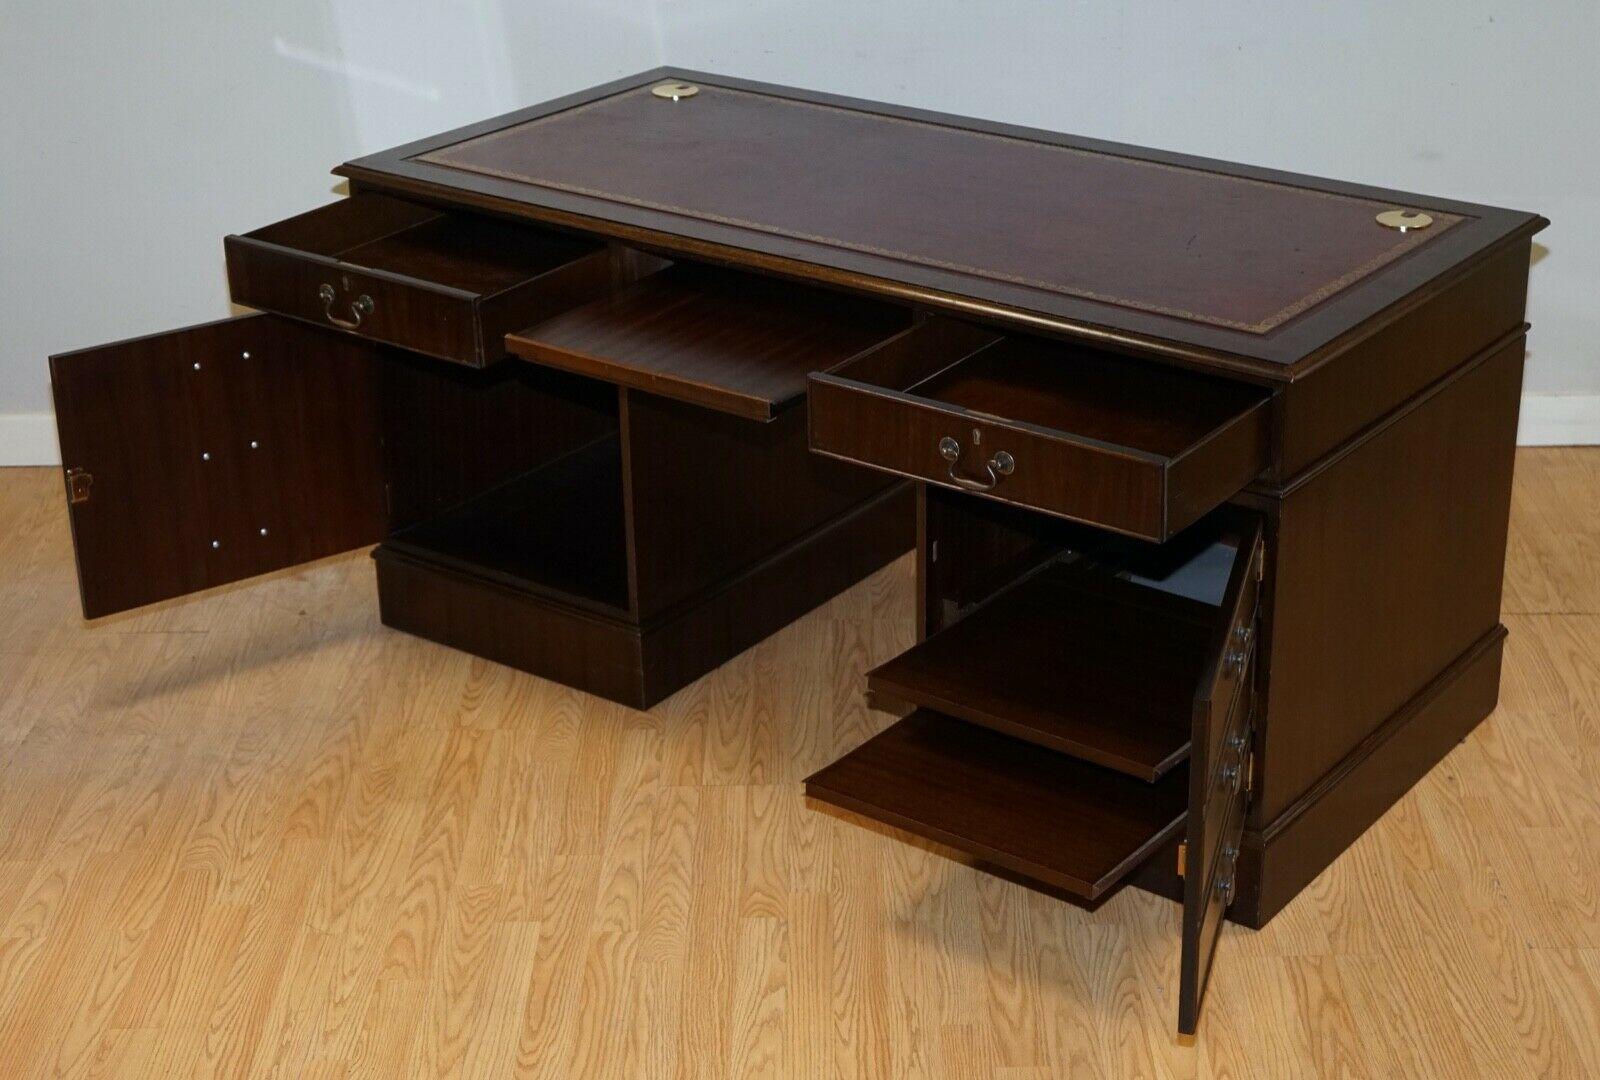 Hardwood Twin Pedestal Partner Desk Leather Top Designed to House Computer 2